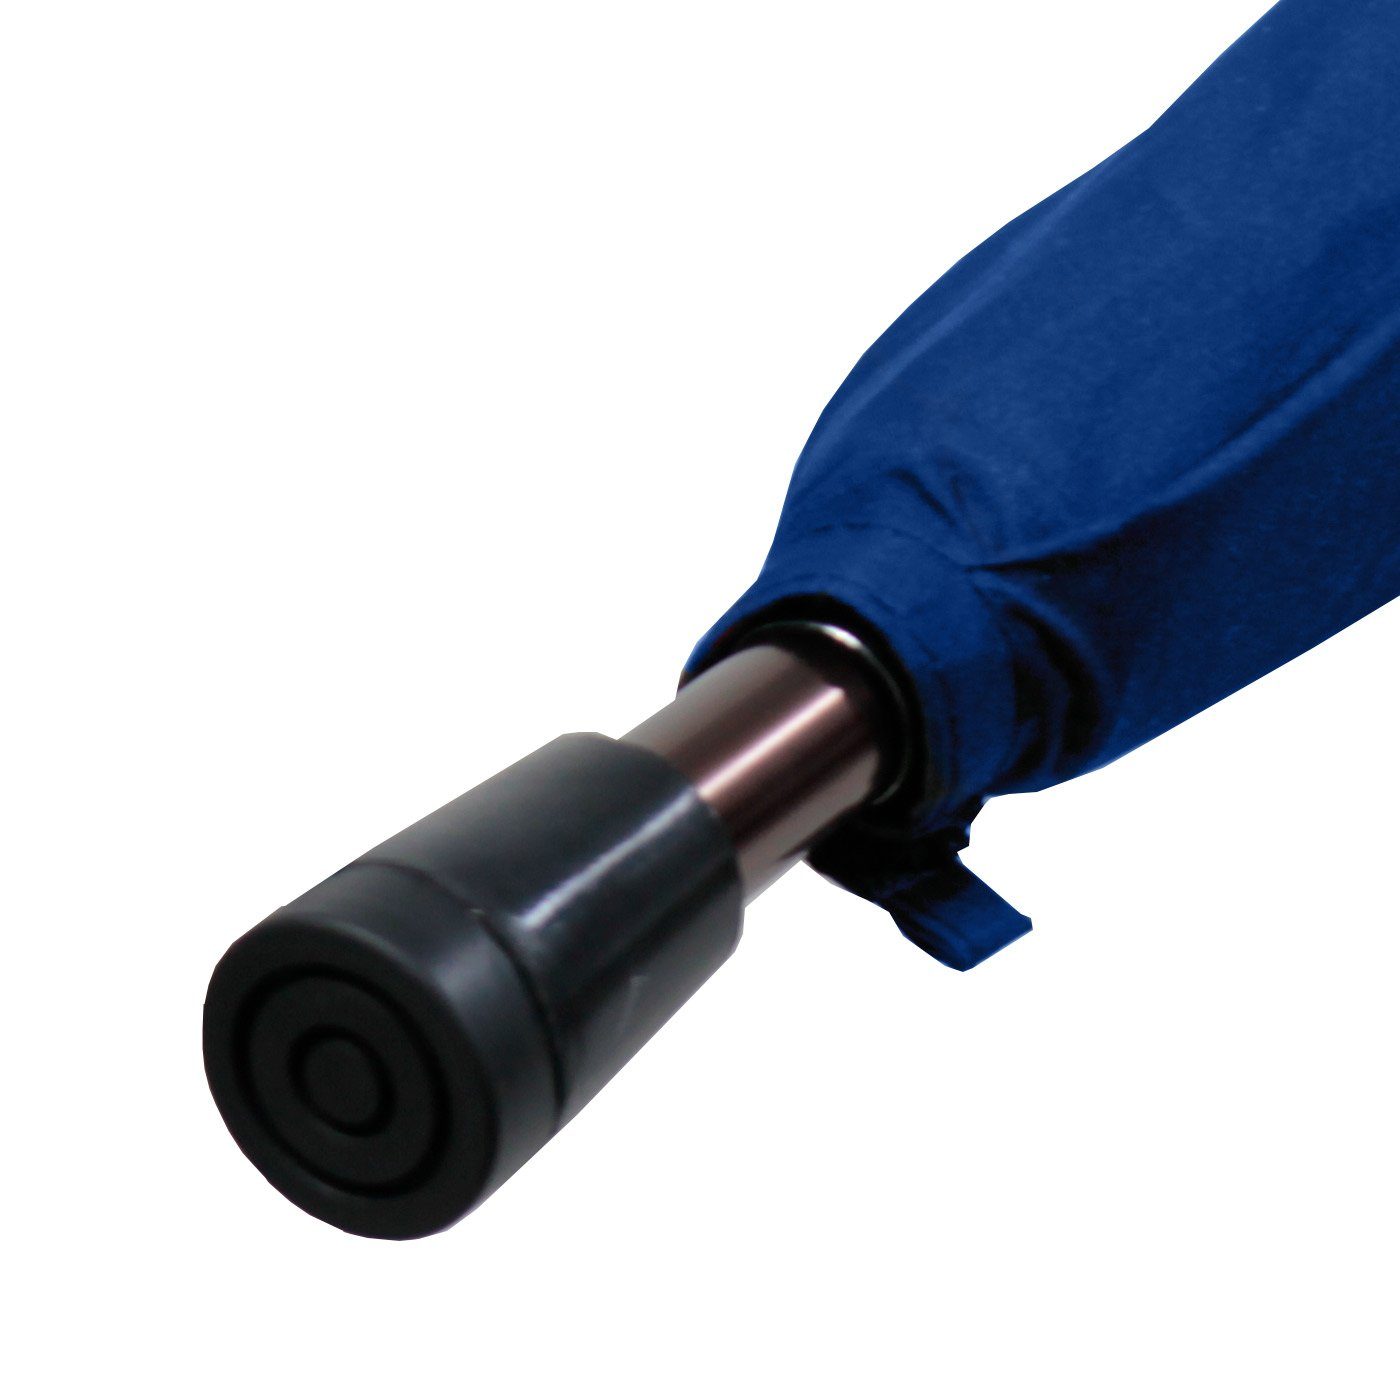 stabil, Langregenschirm extrem-stabil Stützschirm iX-brella sehr blau Holzgriff höhenverstellbar